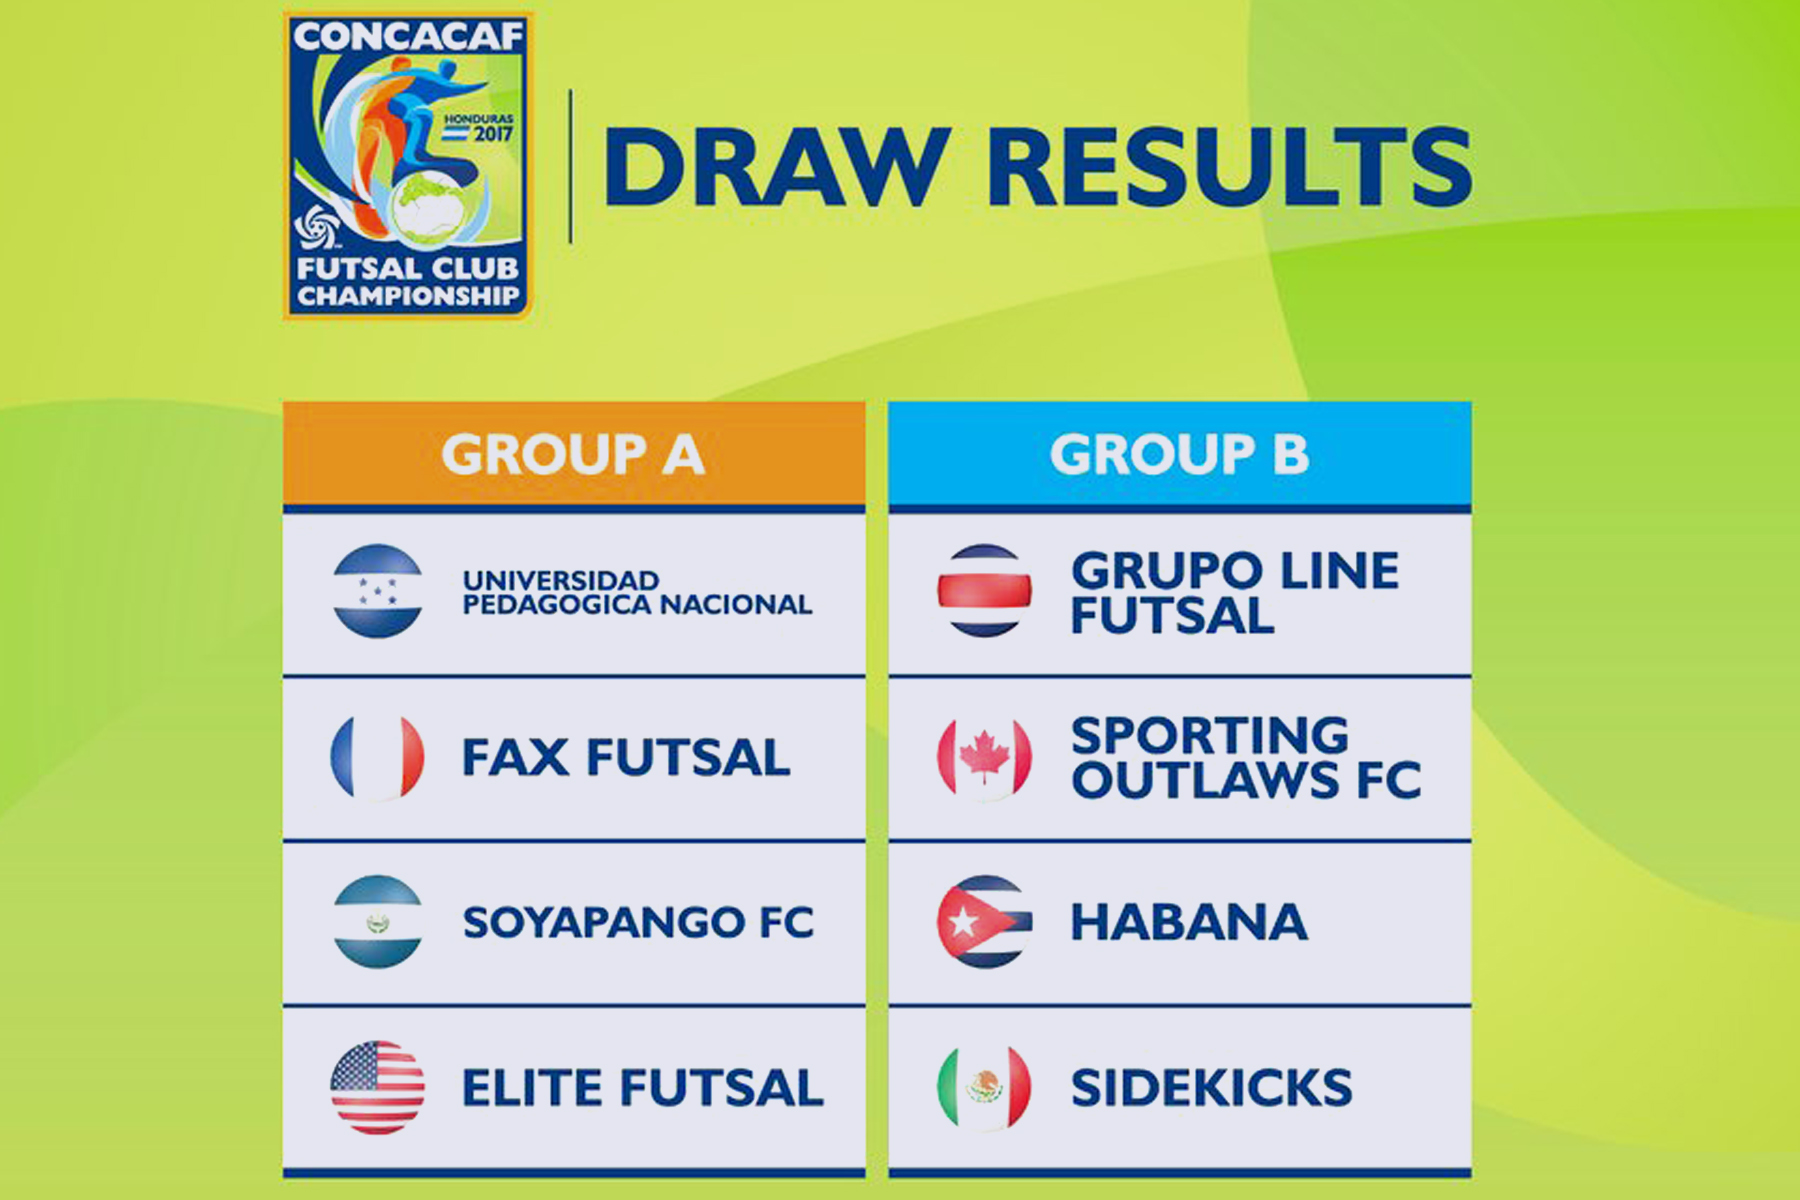 CONCACAF define los grupos del Campeonato de Futsal en Tegucigalpa 